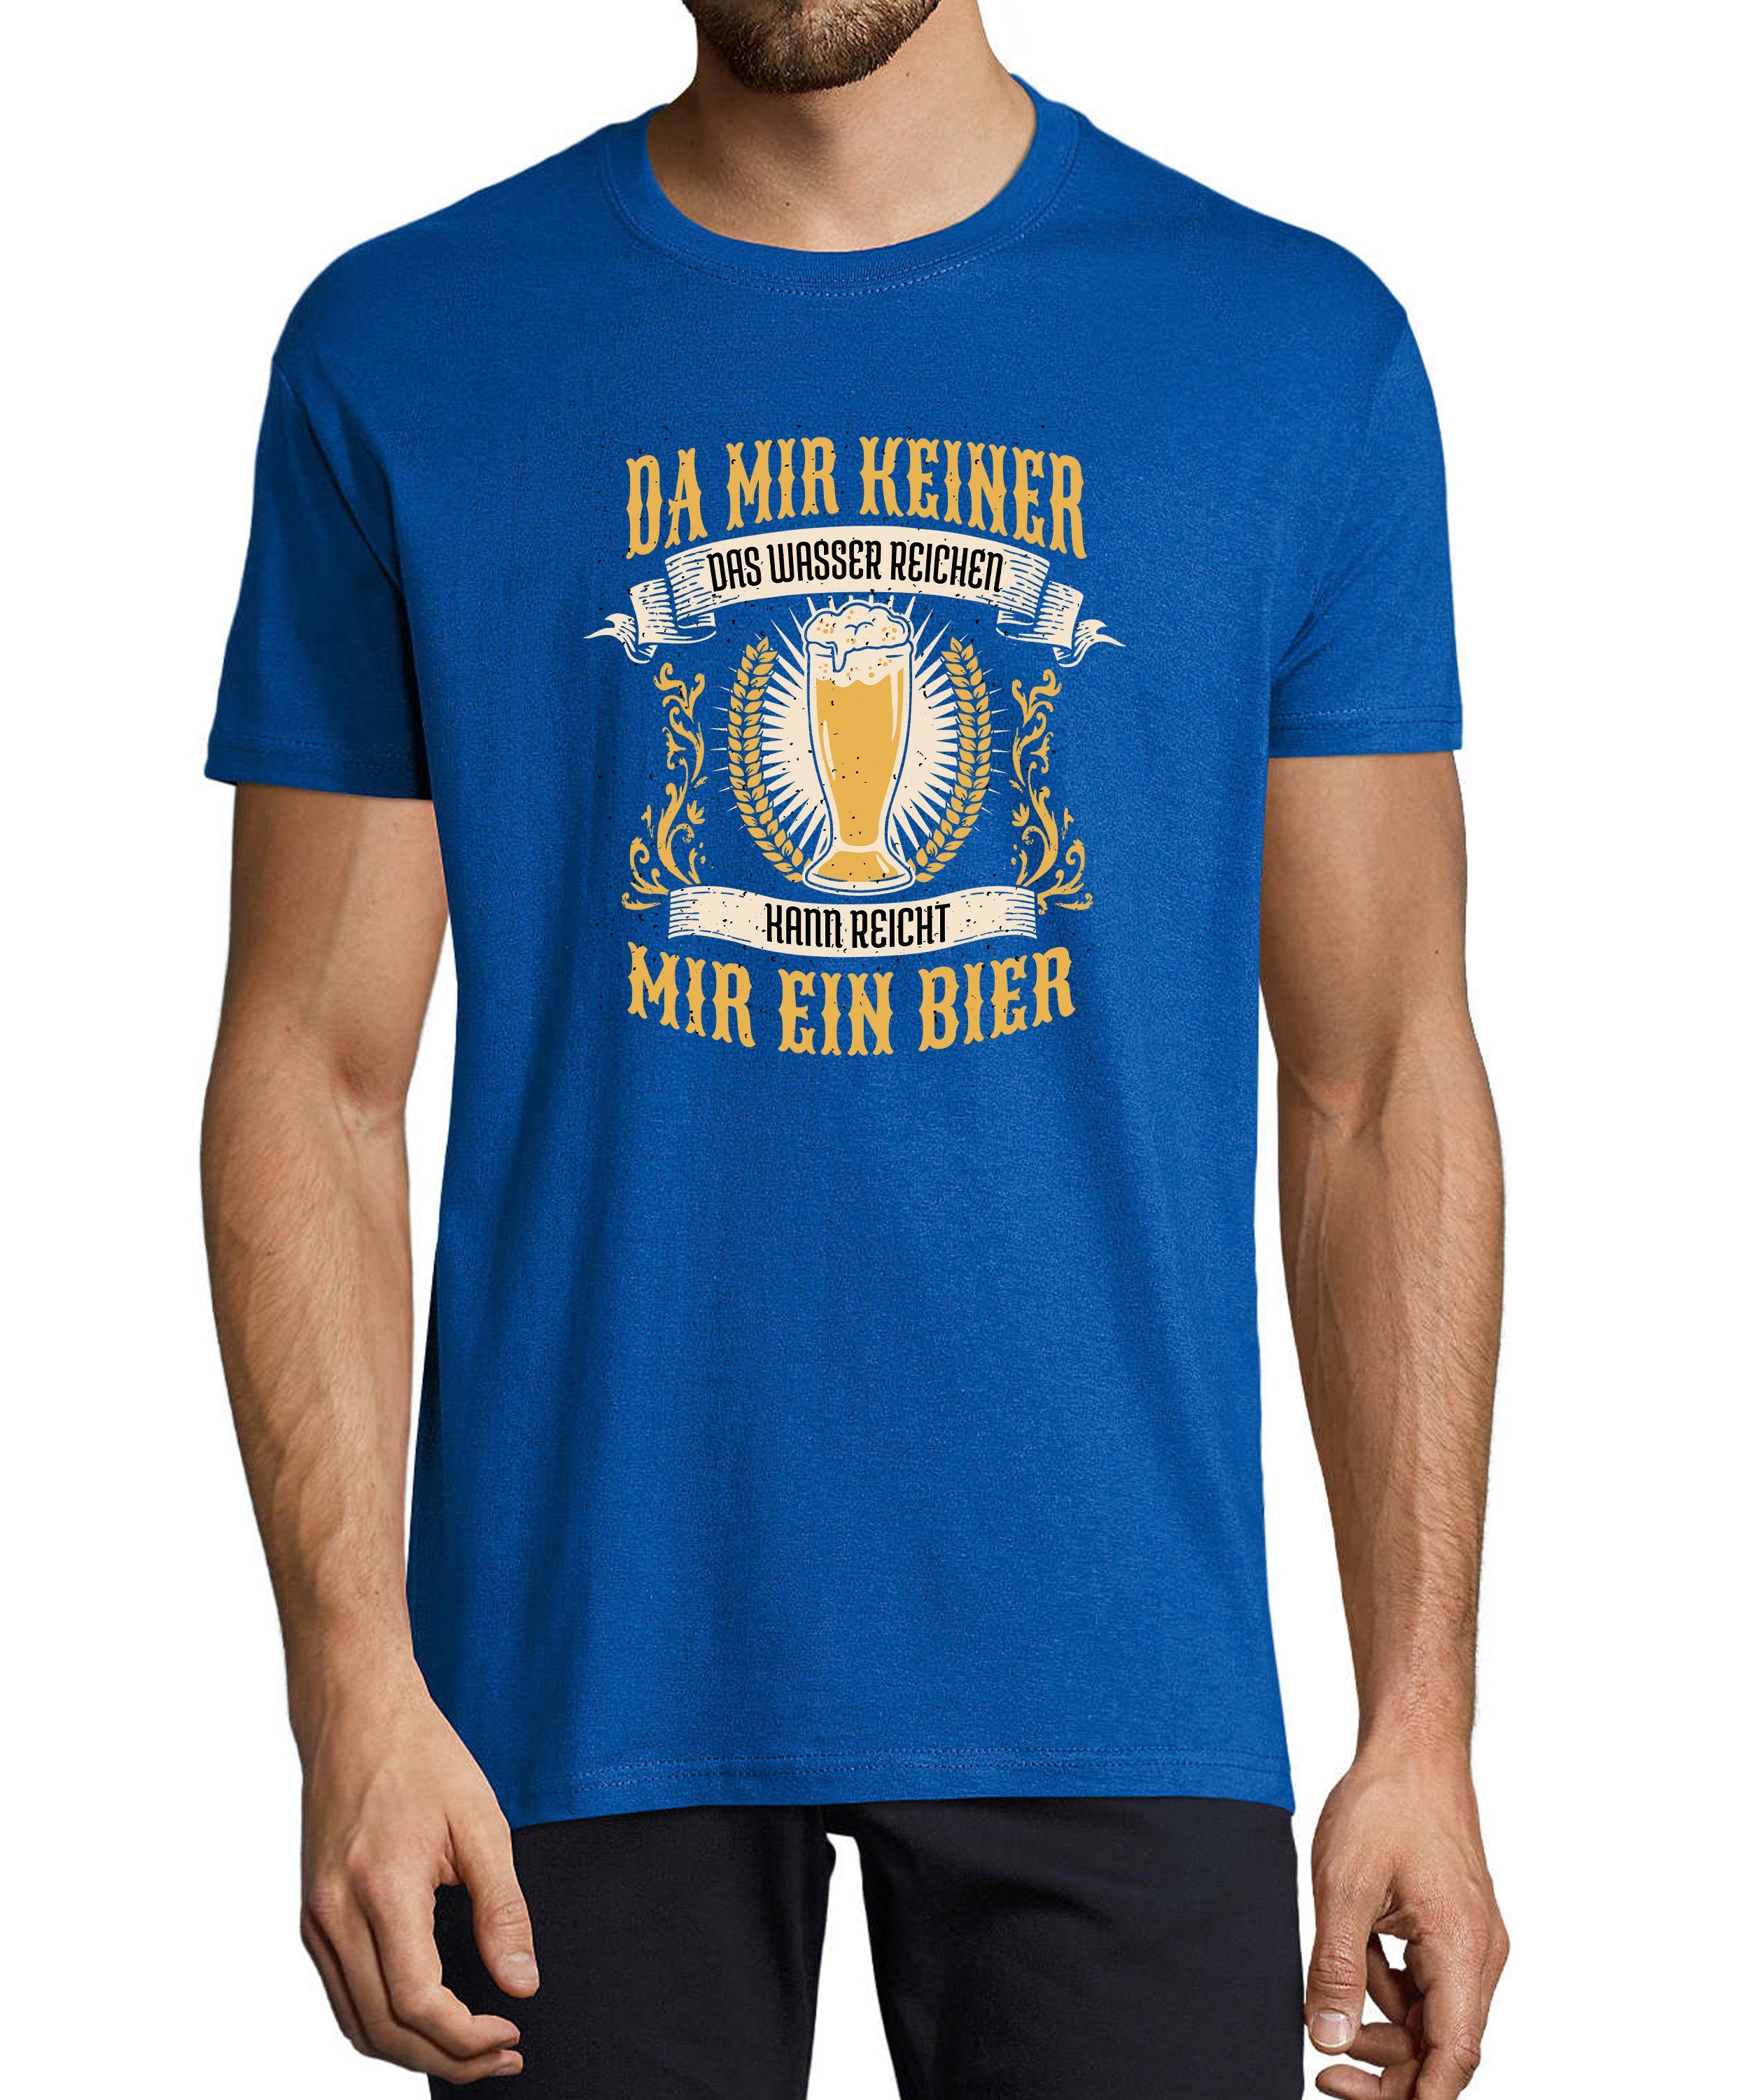 MyDesign24 T-Shirt Herren Fun Print Shirt - Oktoberfest Trinkshirt reicht mir ein Bier Baumwollshirt mit Aufdruck Regular Fit, i308 royal blau